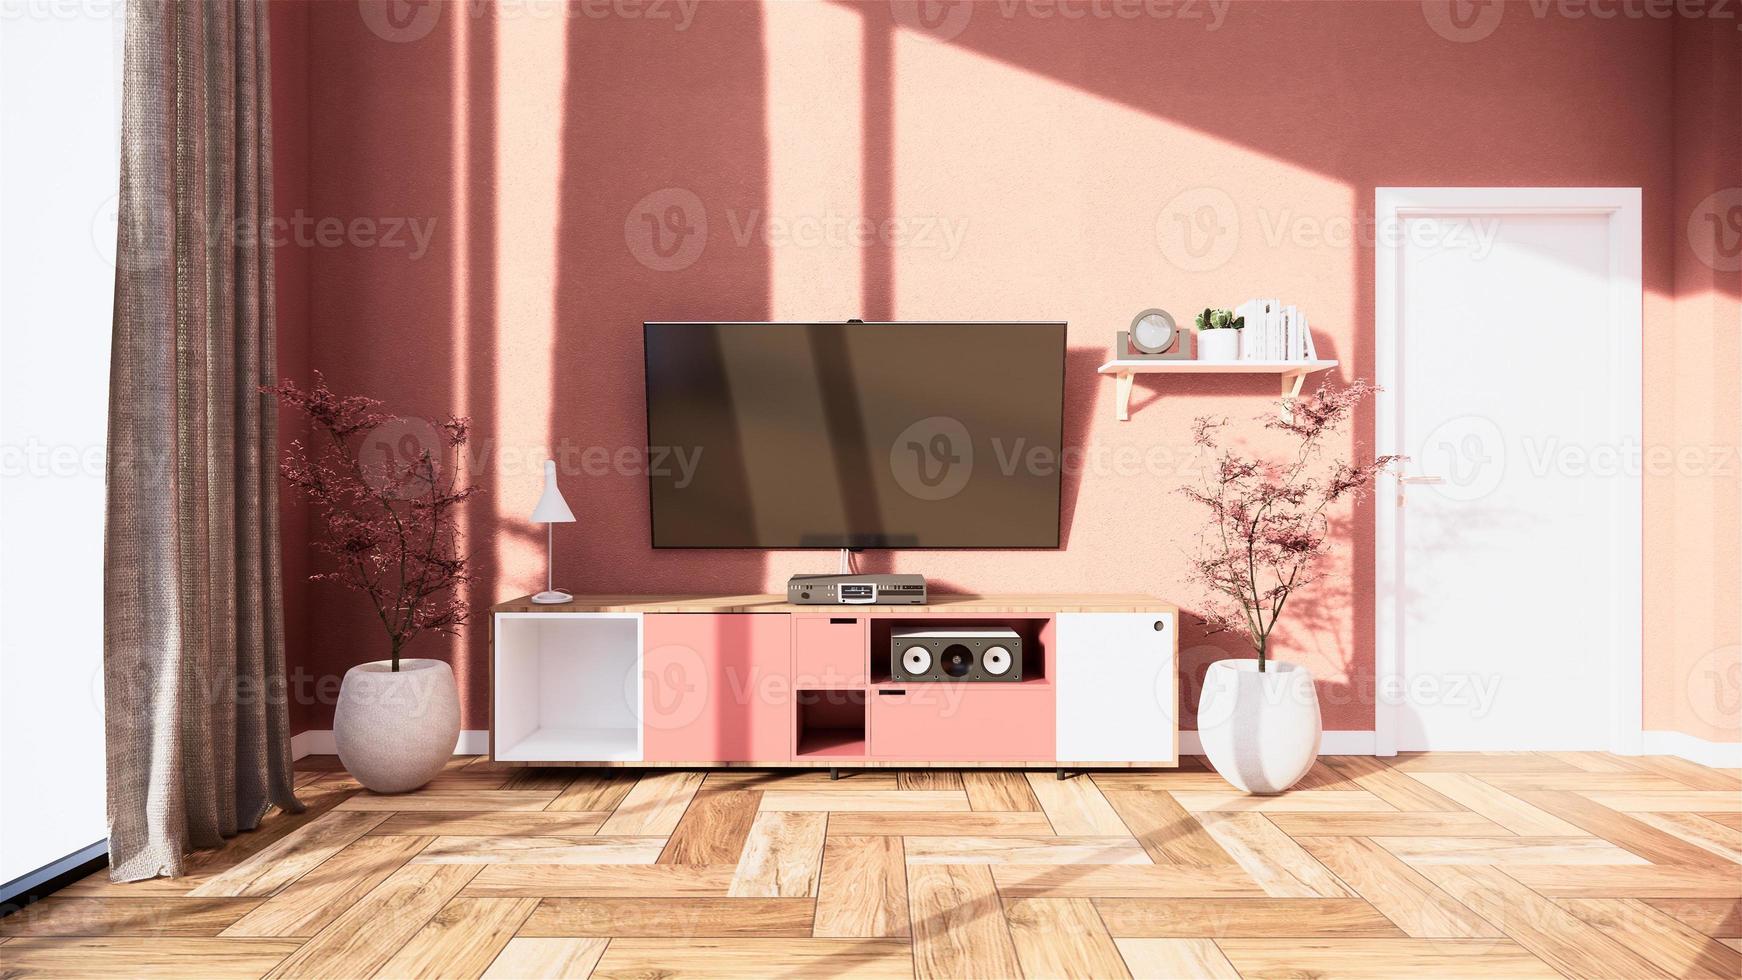 gabinete de tv e display japonês do interior da sala de estar rosa sakura para edição. Renderização 3d foto